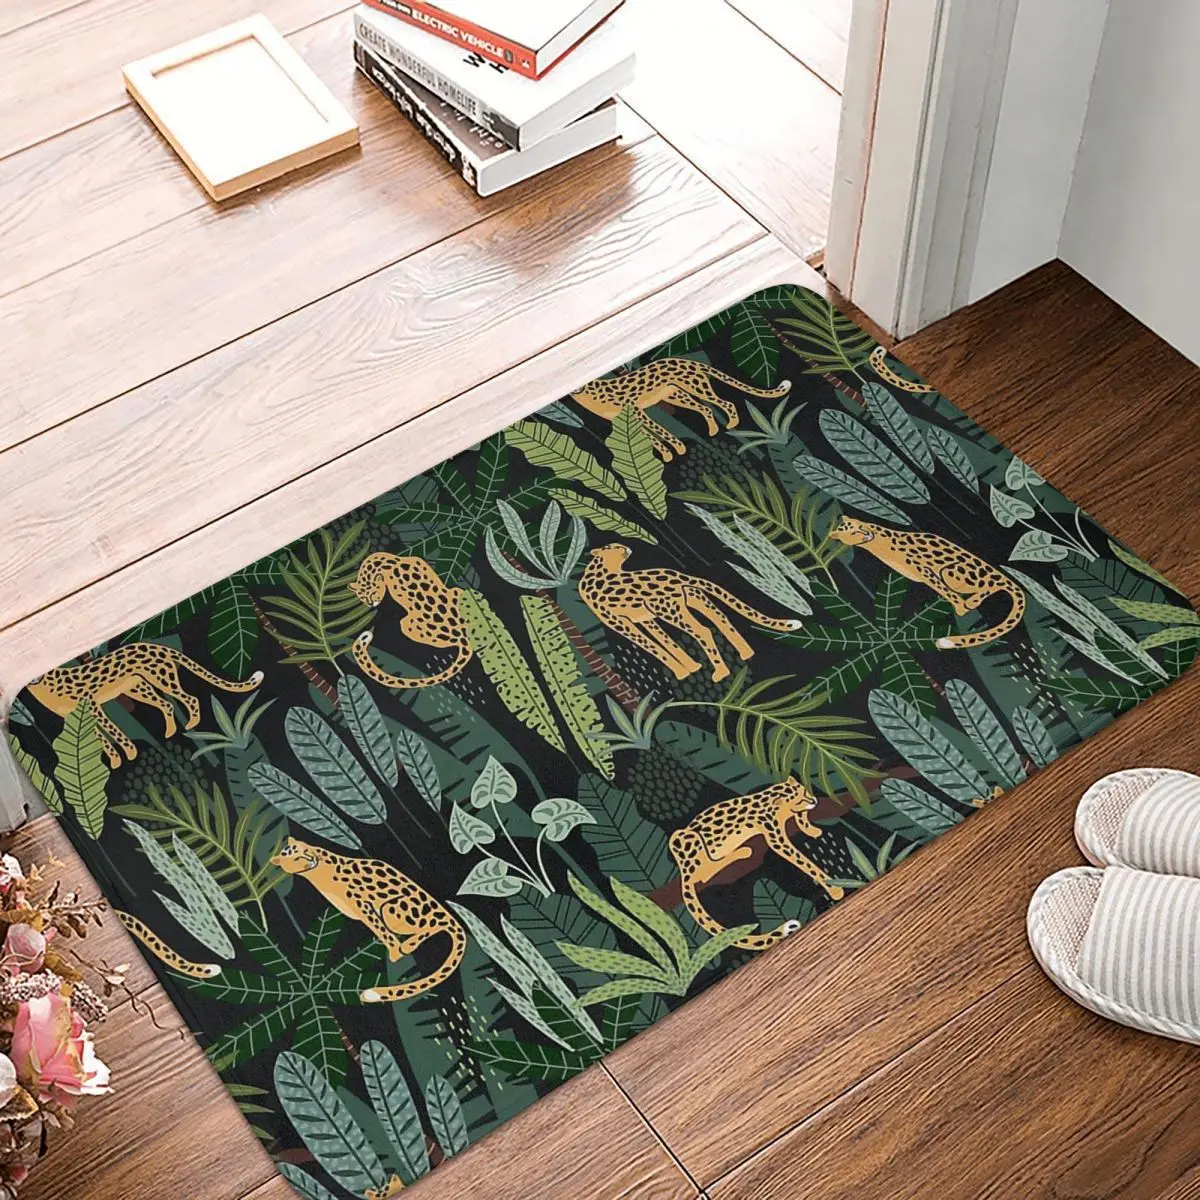 

Funny Cool Animals Bathroom Non-Slip Carpet Indian Jungle Pattern Leopard Bedroom Mat Welcome Doormat Floor Decoration Rug